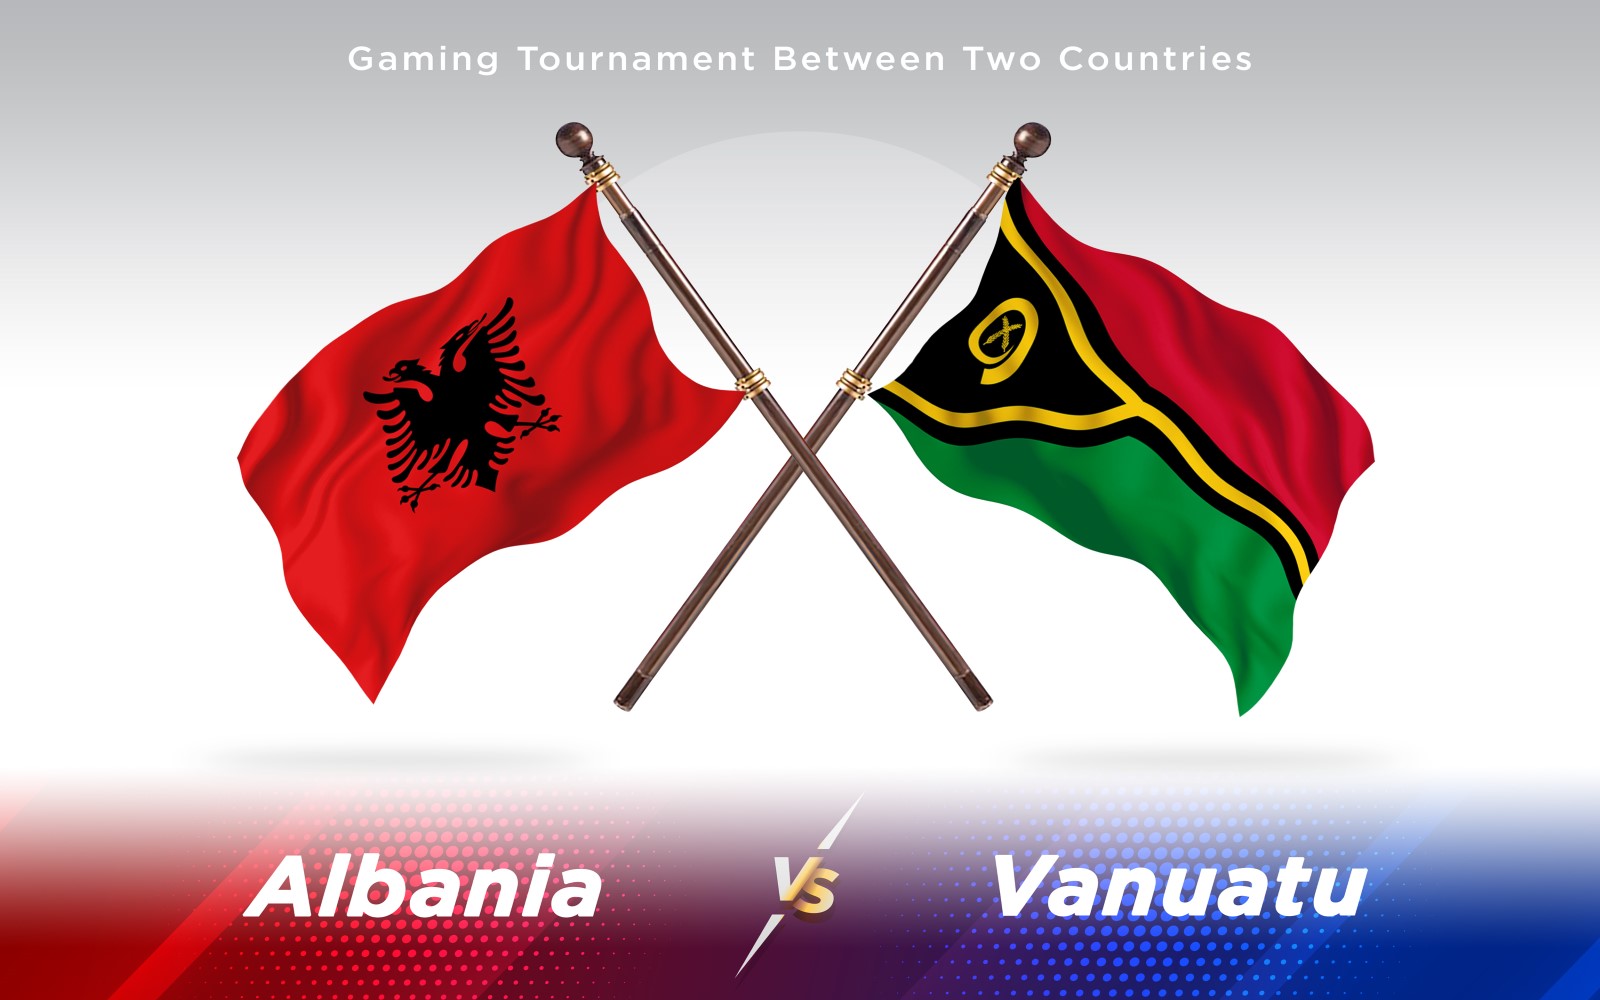 Albania versus Vanuatu Two Countries Flags - Illustration